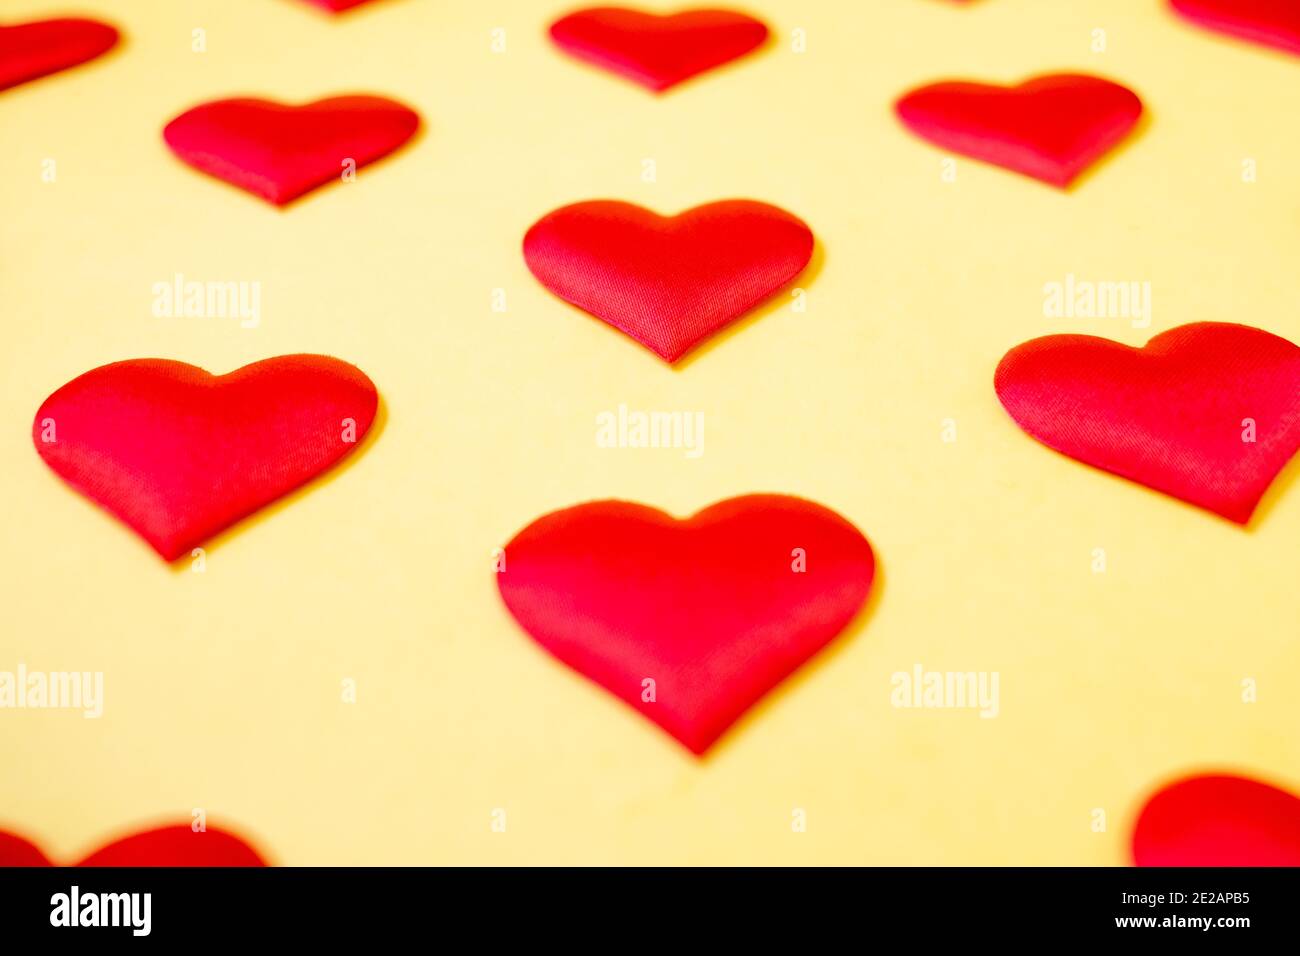 Muchos corazones de seda roja idénticos que se encuentran escalonados sobre un fondo amarillo. Símbolo de amor, ternura y pasión. Foto de stock